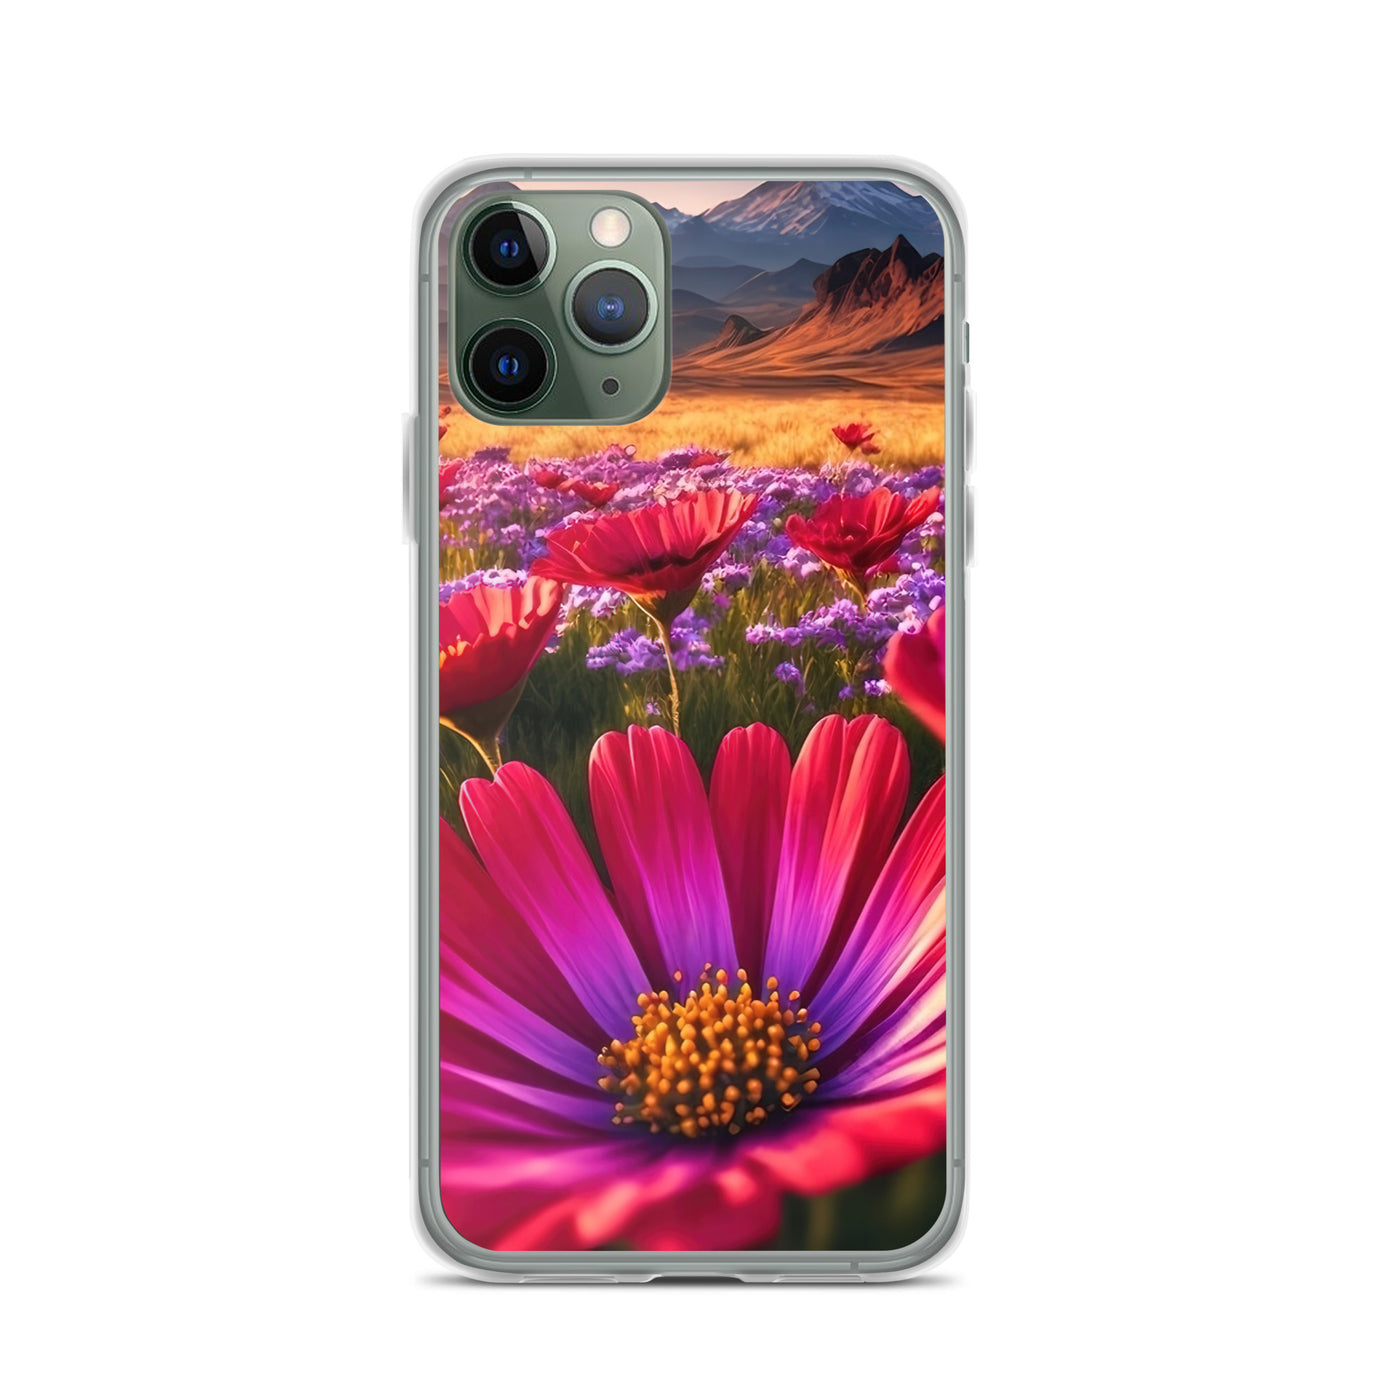 Wünderschöne Blumen und Berge im Hintergrund - iPhone Schutzhülle (durchsichtig) berge xxx iPhone 11 Pro